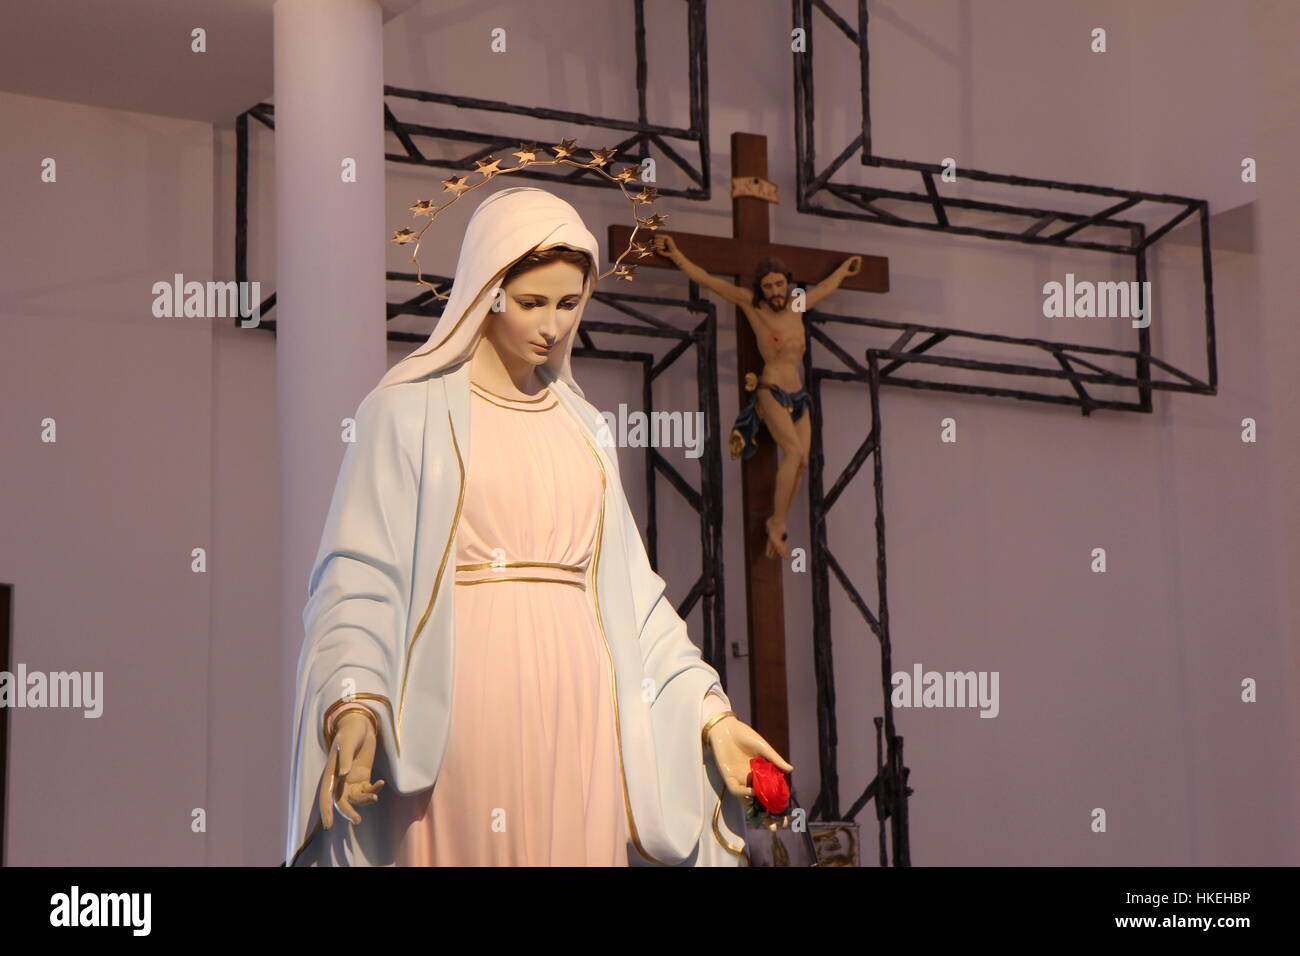 La statue de Vierge Marie de Medjugorje en Tihaljina avec la croix avec Jésus de plus en plus floue dans l'arrière-plan. Banque D'Images